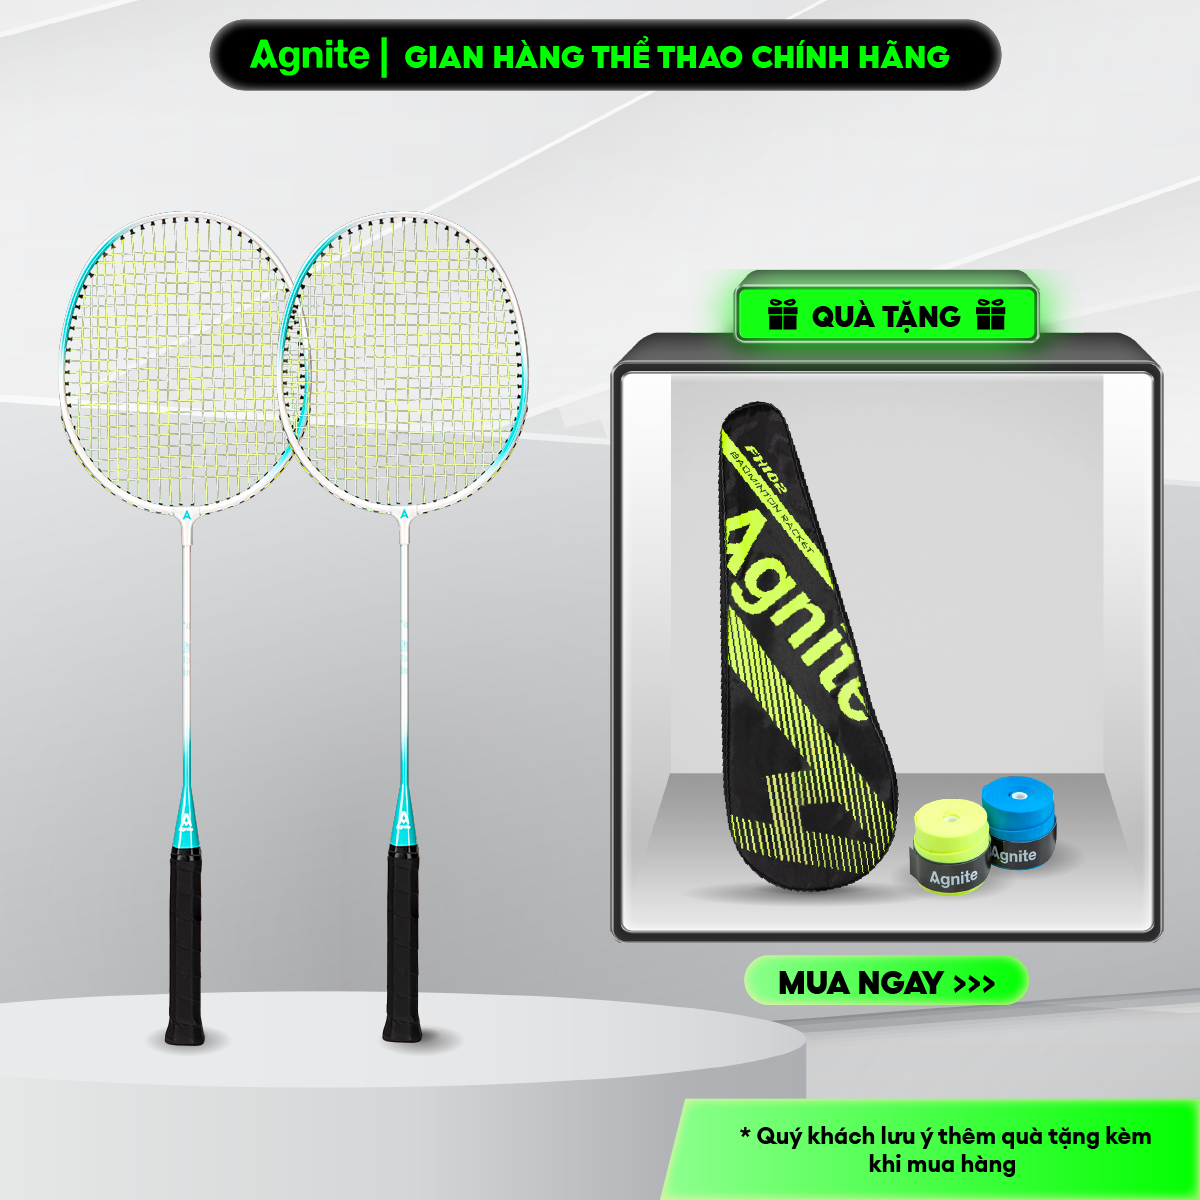 Hình ảnh Bộ 2 vợt cầu lông Agnite chính hãng, hợp kim cacbon siêu bền, khớp chữ T, thiết kế khung rãnh sâu, màu pastel - FH102